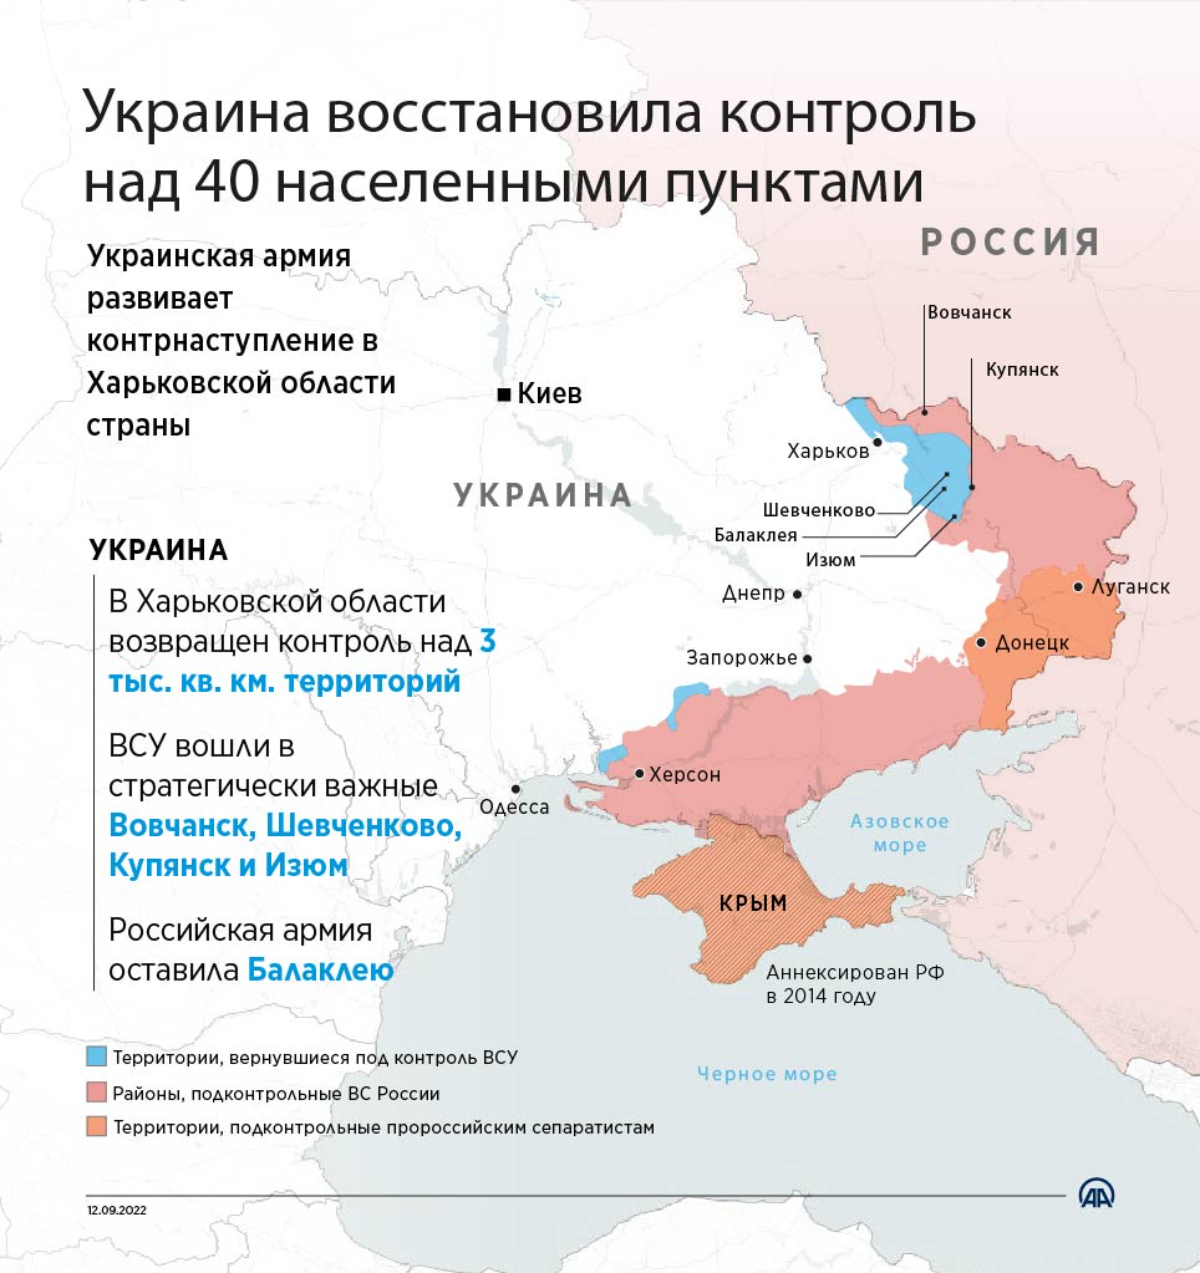 Украина восстановила контроль над 40 населенными пунктами